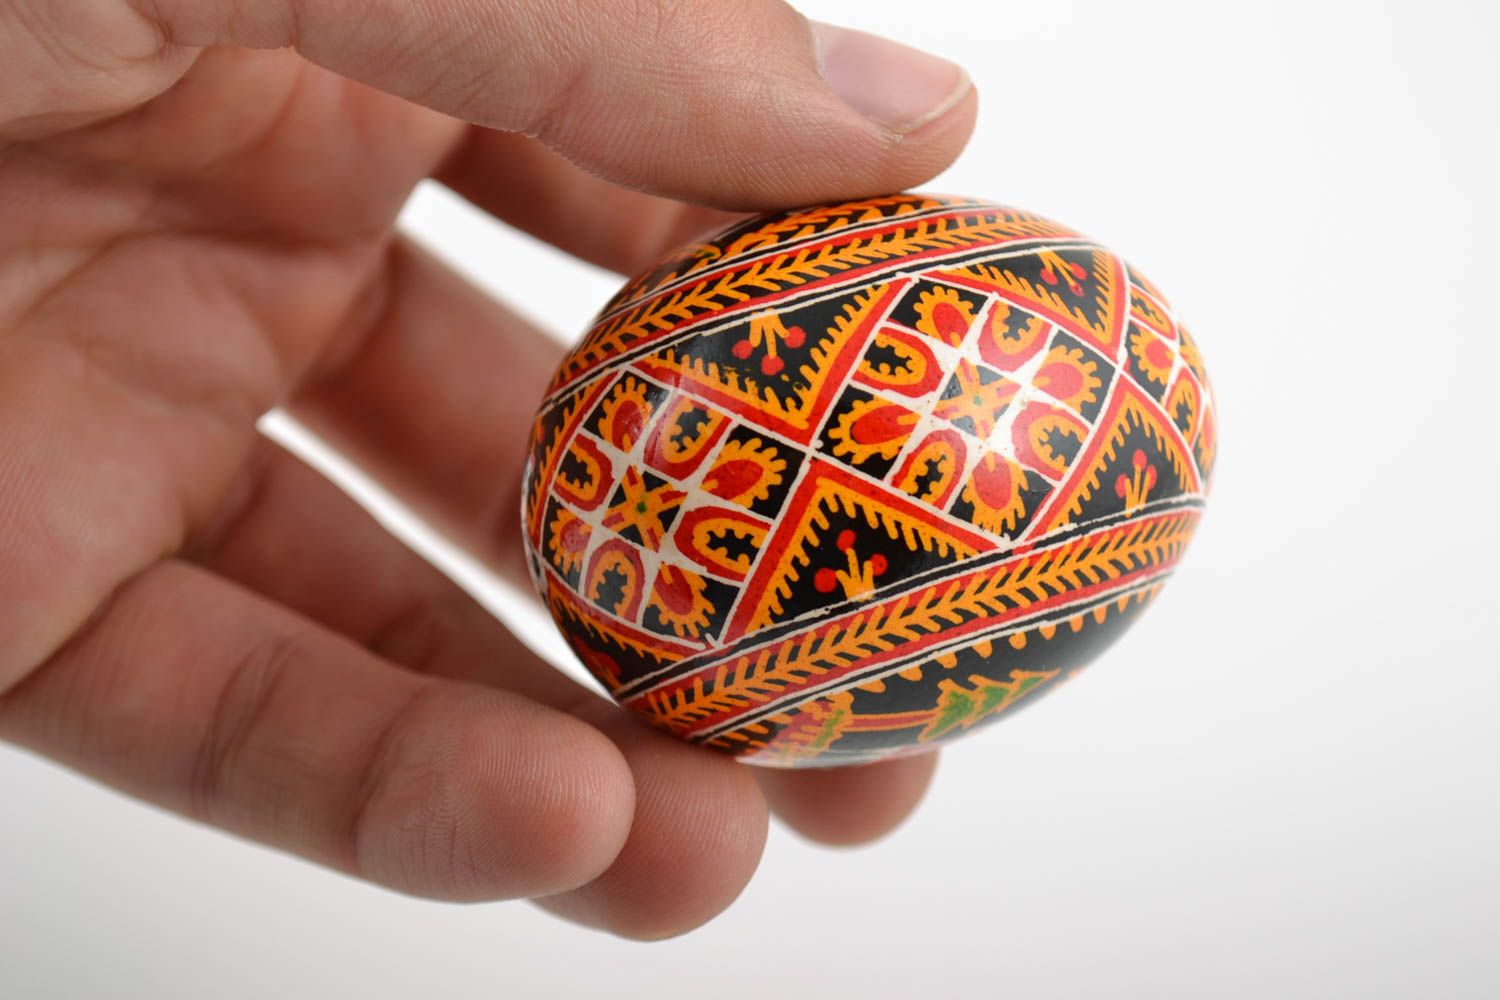 Расписное пасхальное яйцо с орнаментом подарок красивое необычное ручной работы фото 2